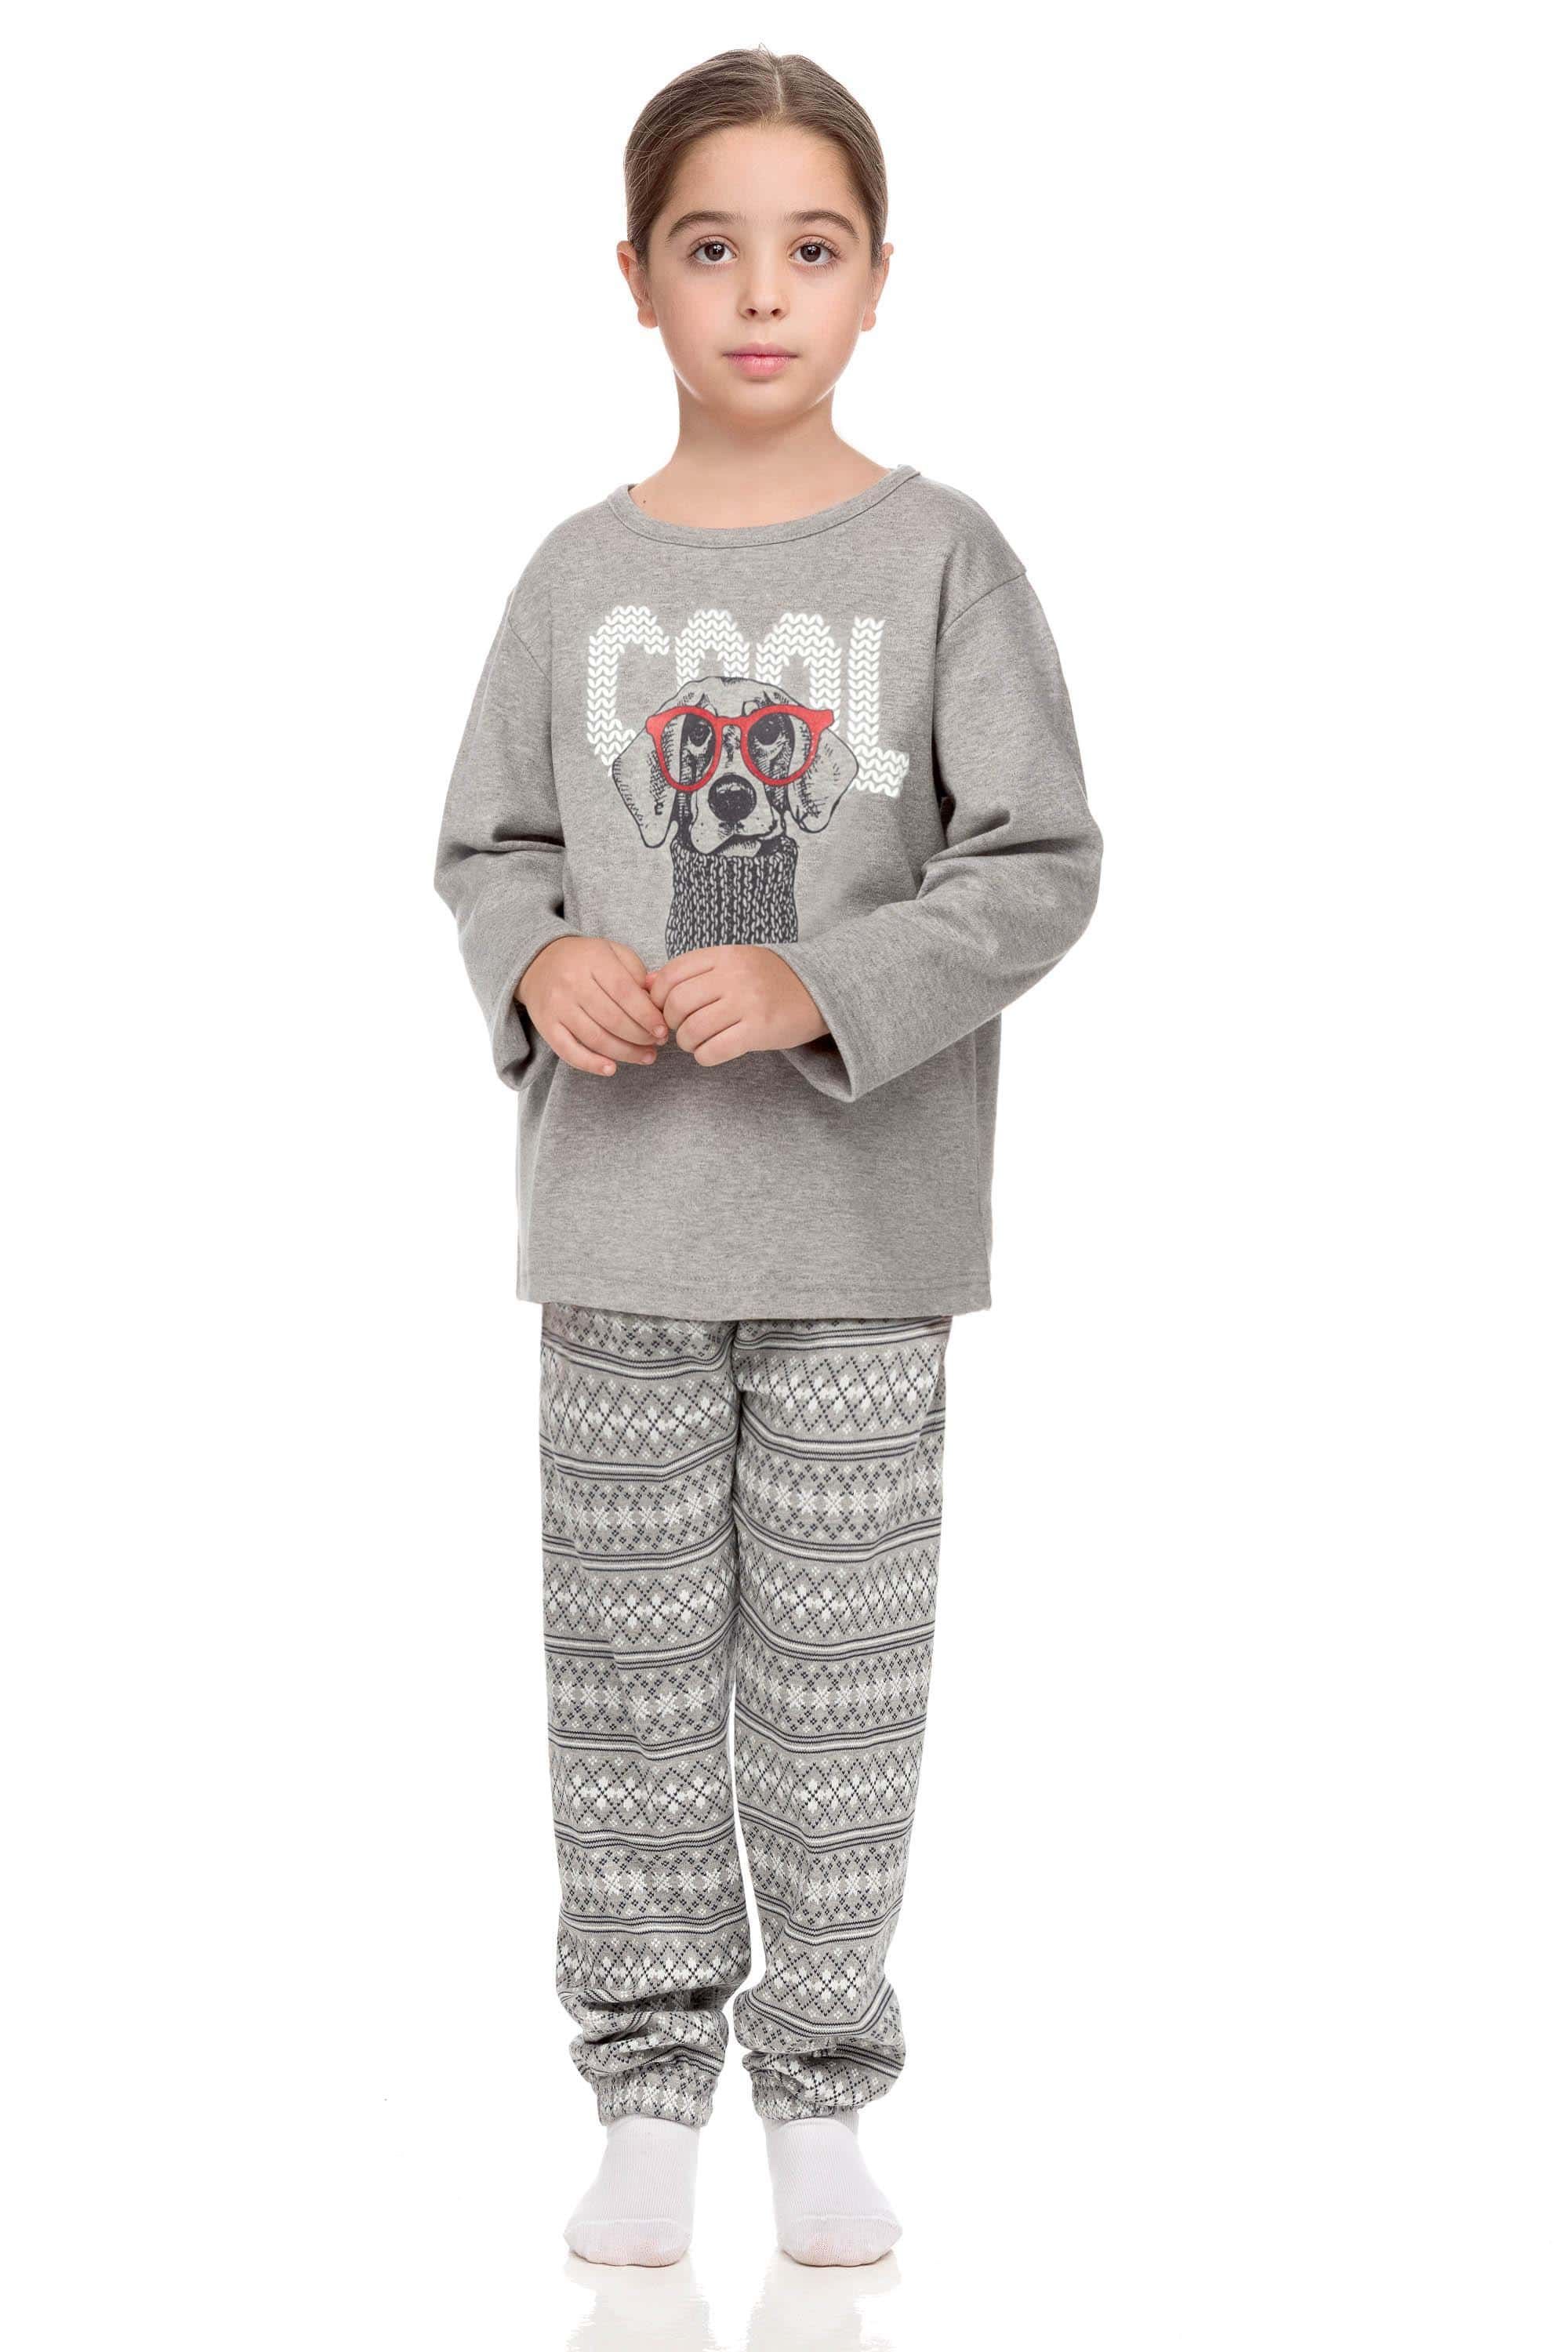 Pohodlné dětské pyžamo